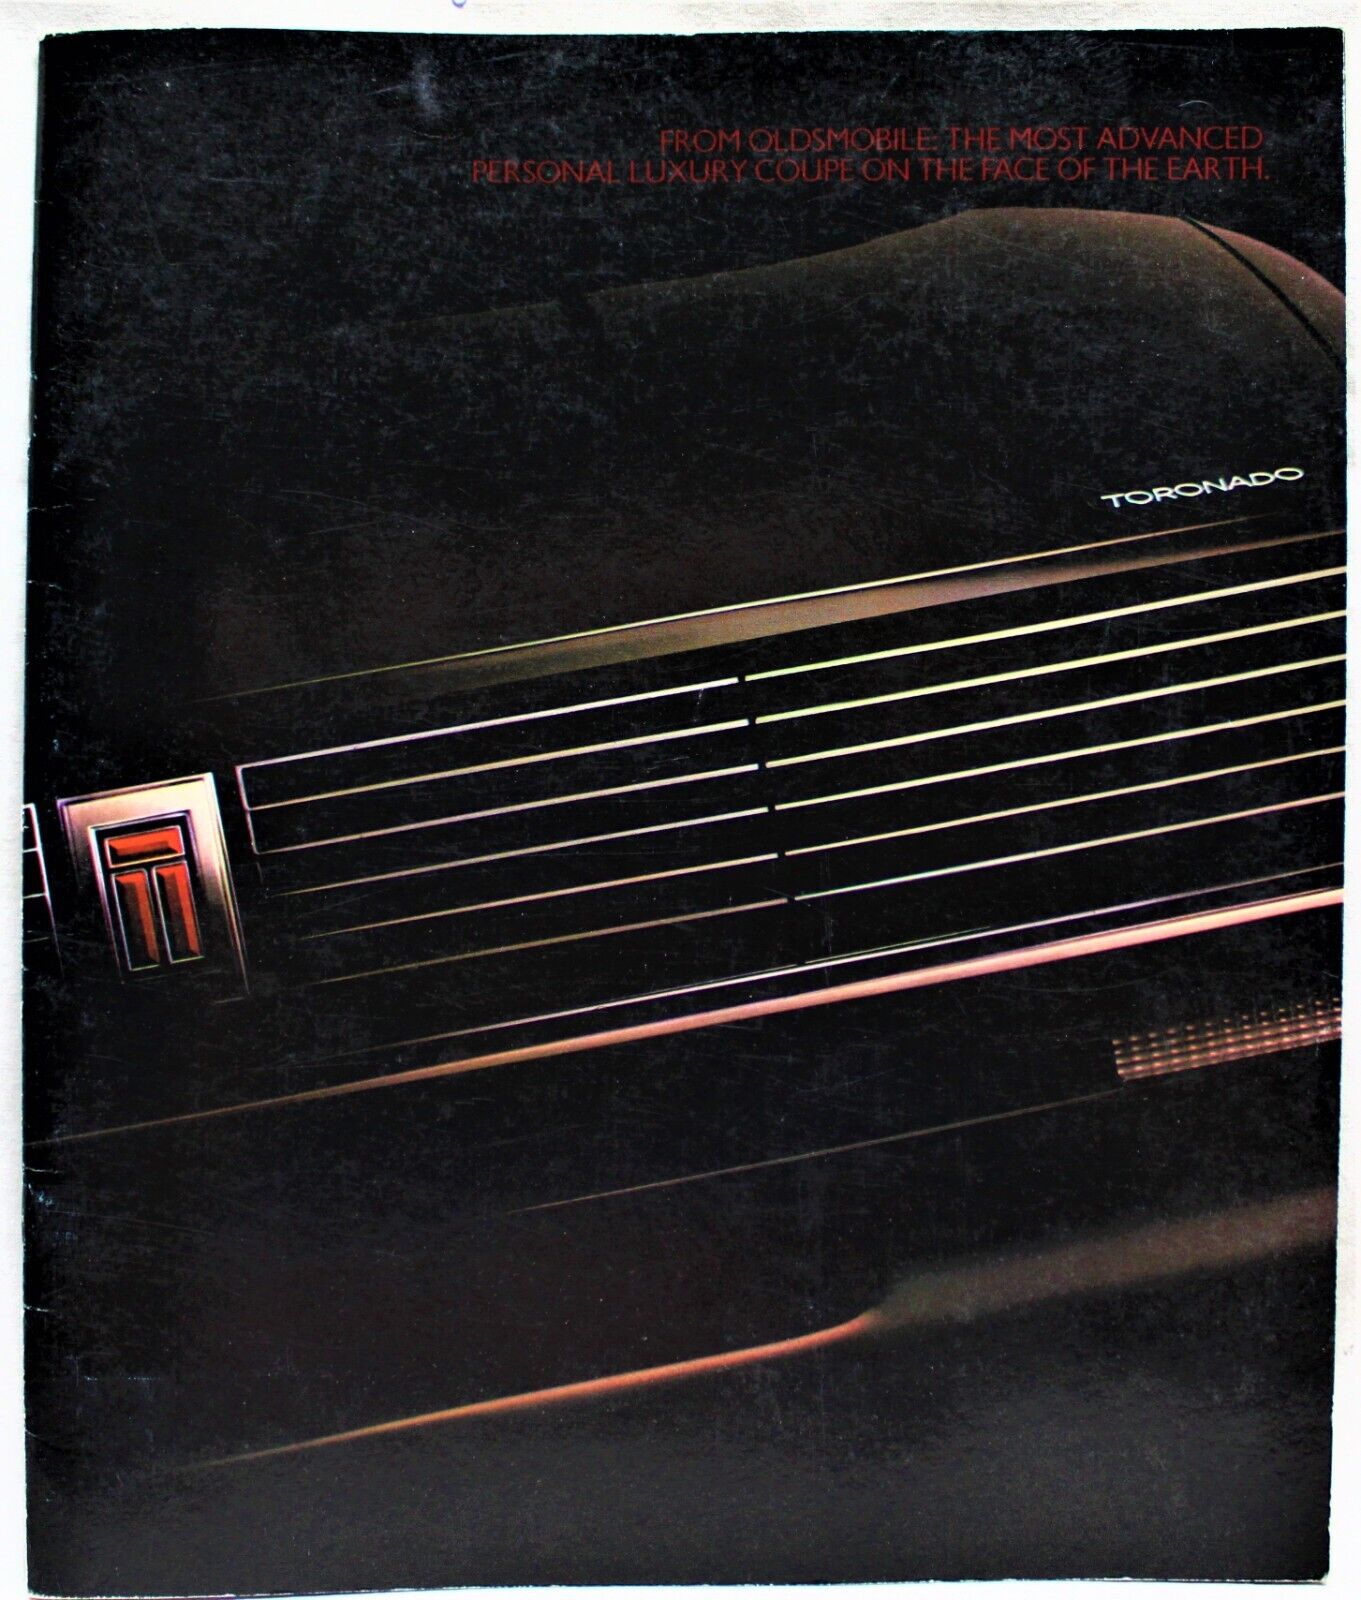 1986 GM OLDSMOBILE TORONADO CAR ADVERTISING SALES BROCHURE GUIDE VINTAGE